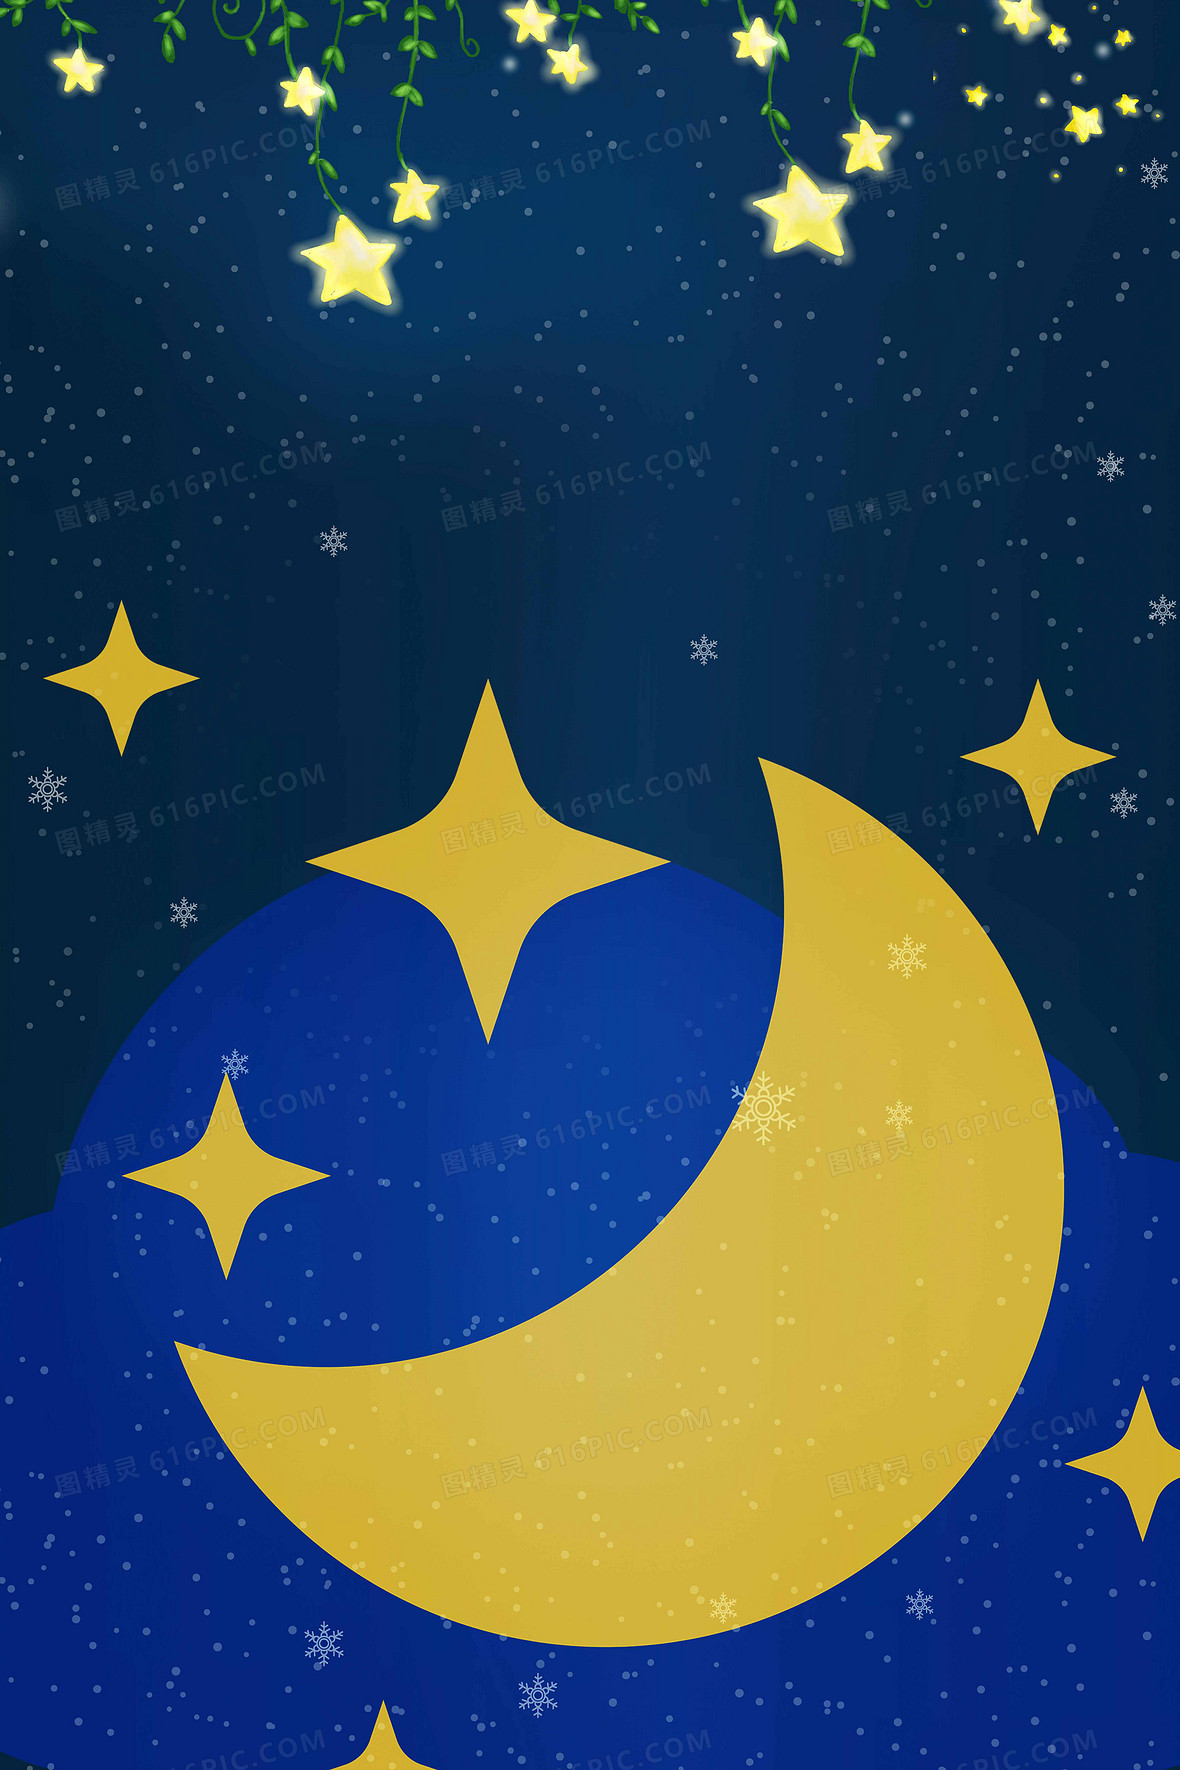 关键词:卡通夜夜晚夜空插画星星星星空月月亮睡眠图精灵为您提供创意